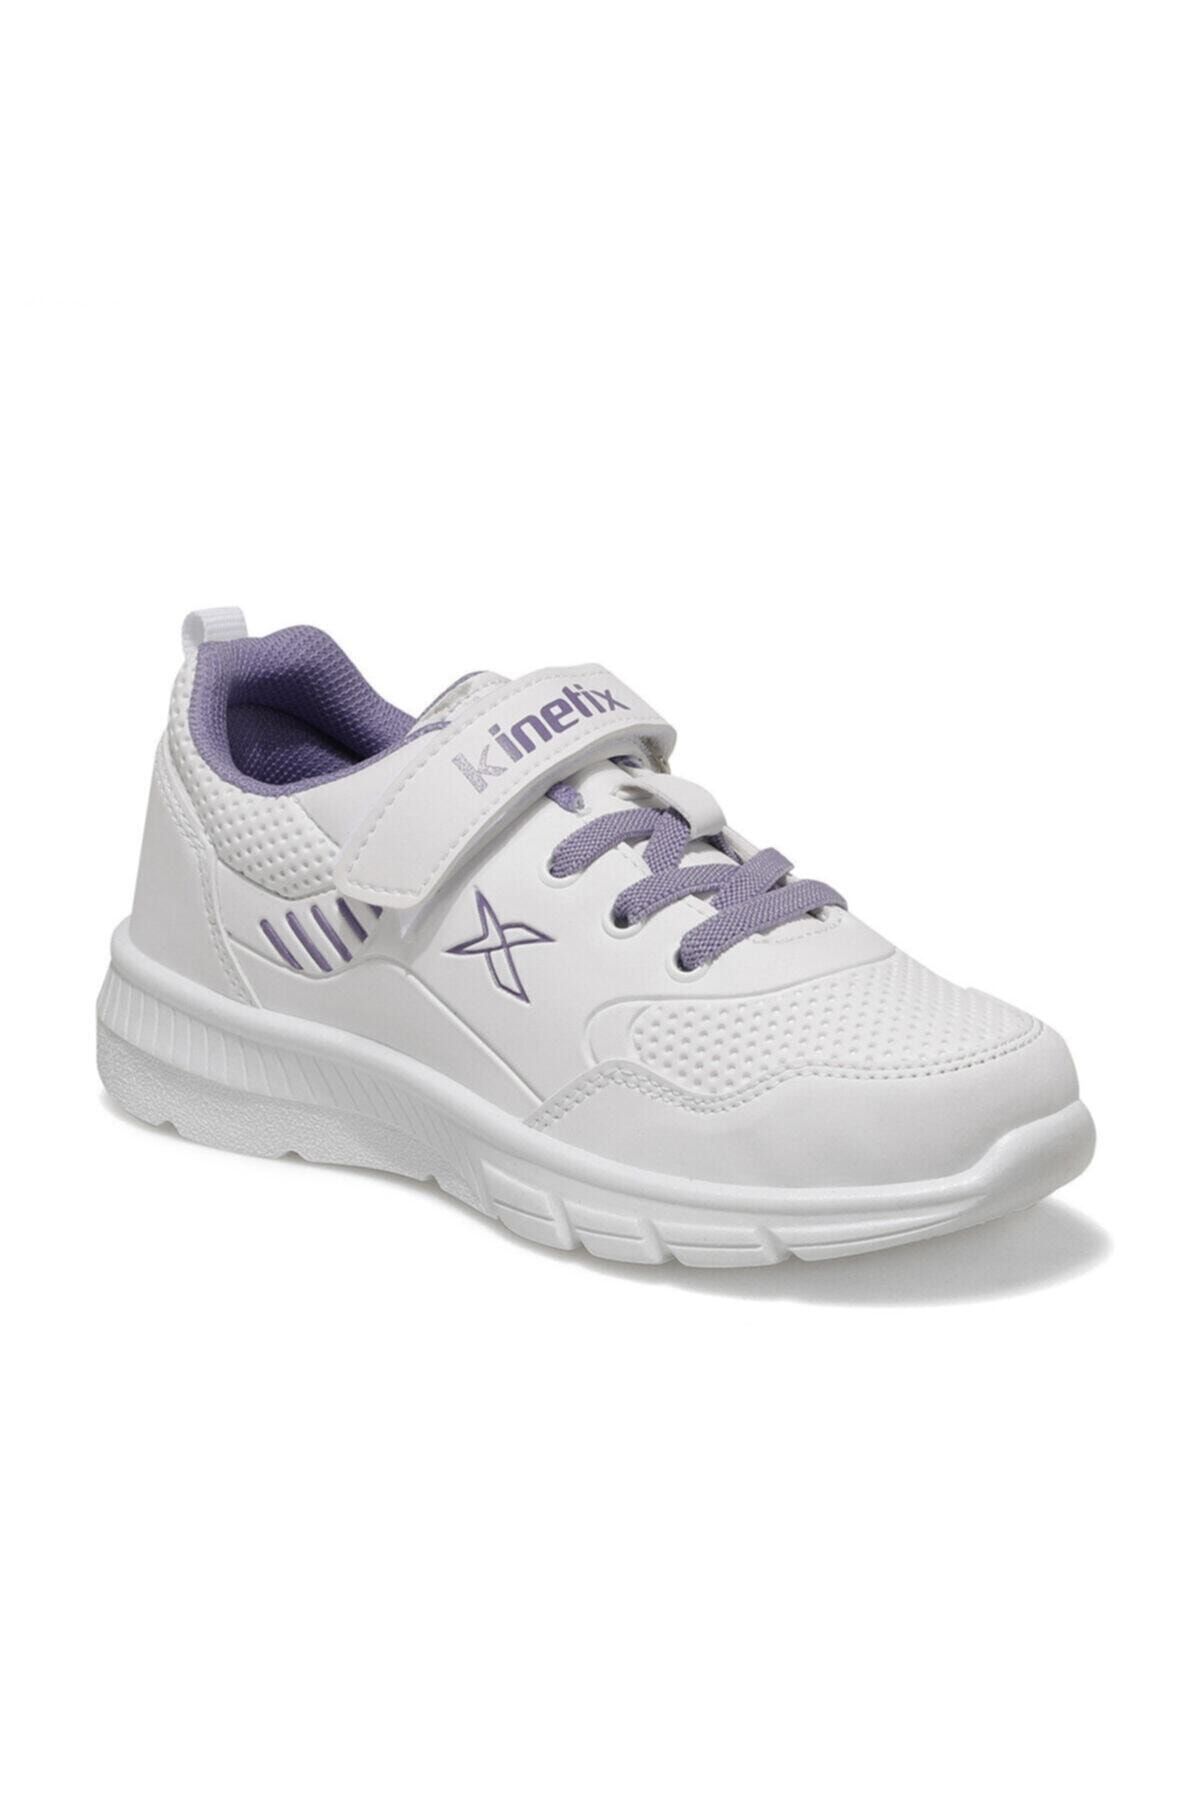 Kinetix WATSON Beyaz Kız Çocuk Yürüyüş Ayakkabısı 100570884